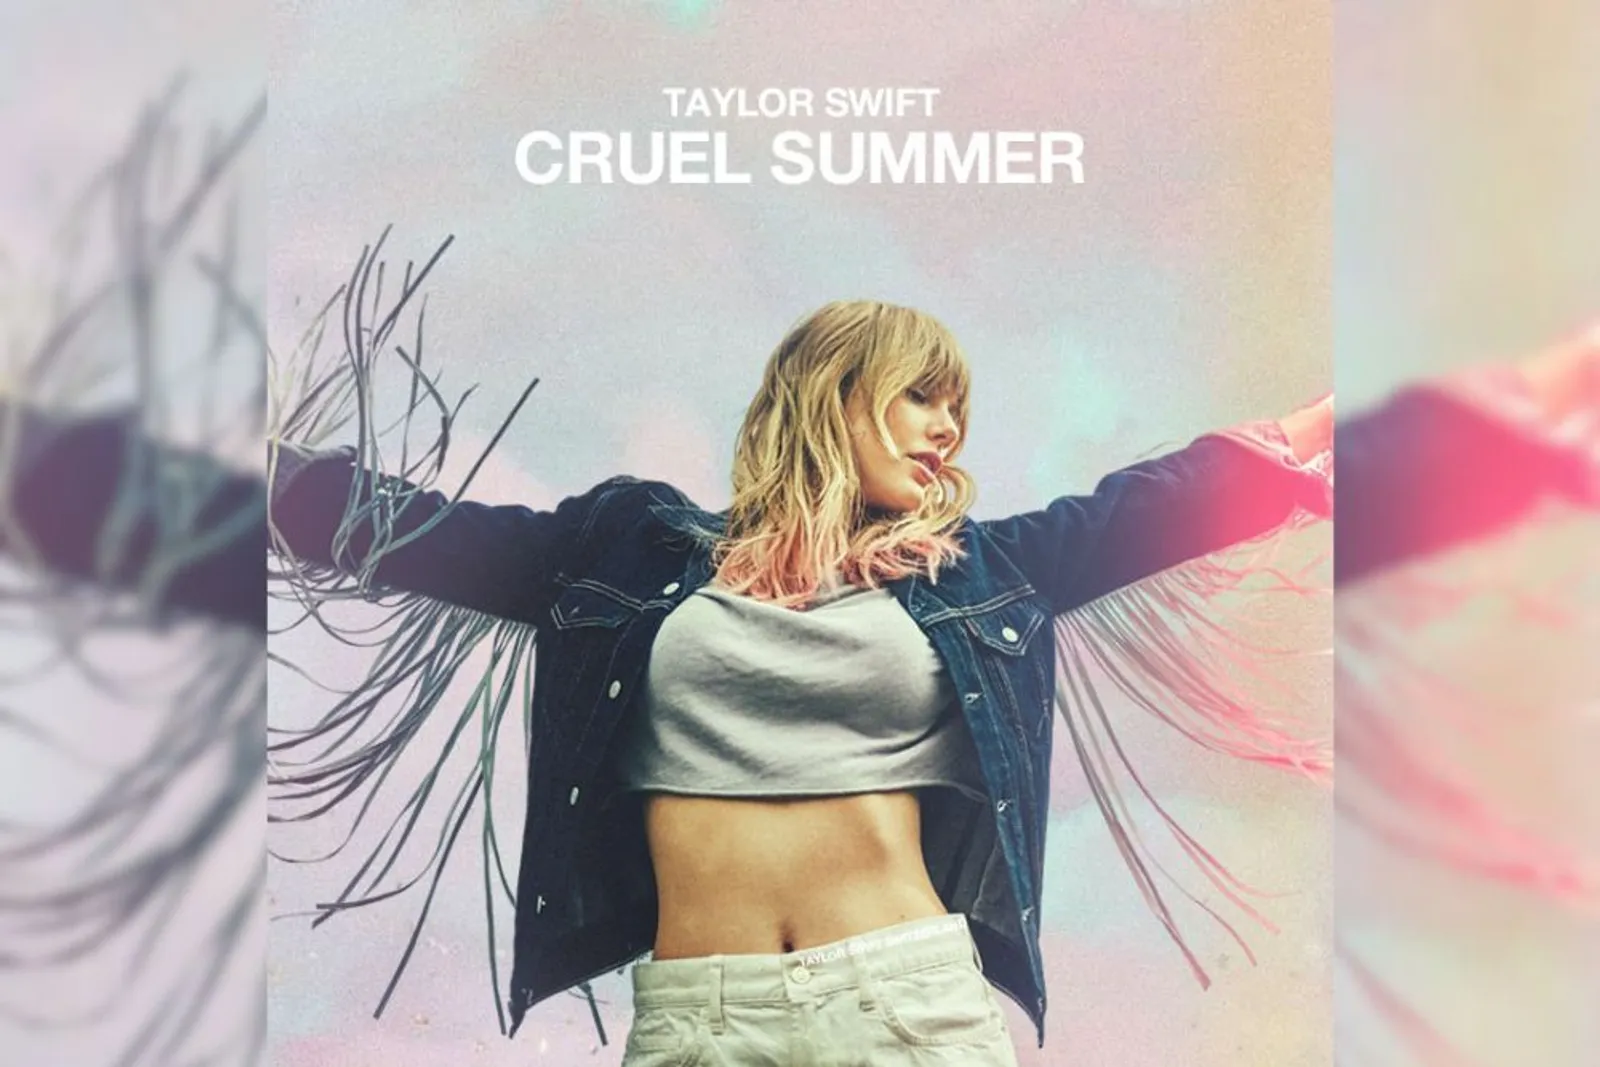 Makna Lagu "Cruel Summer" Taylor Swift, Romansa di Musim Panas